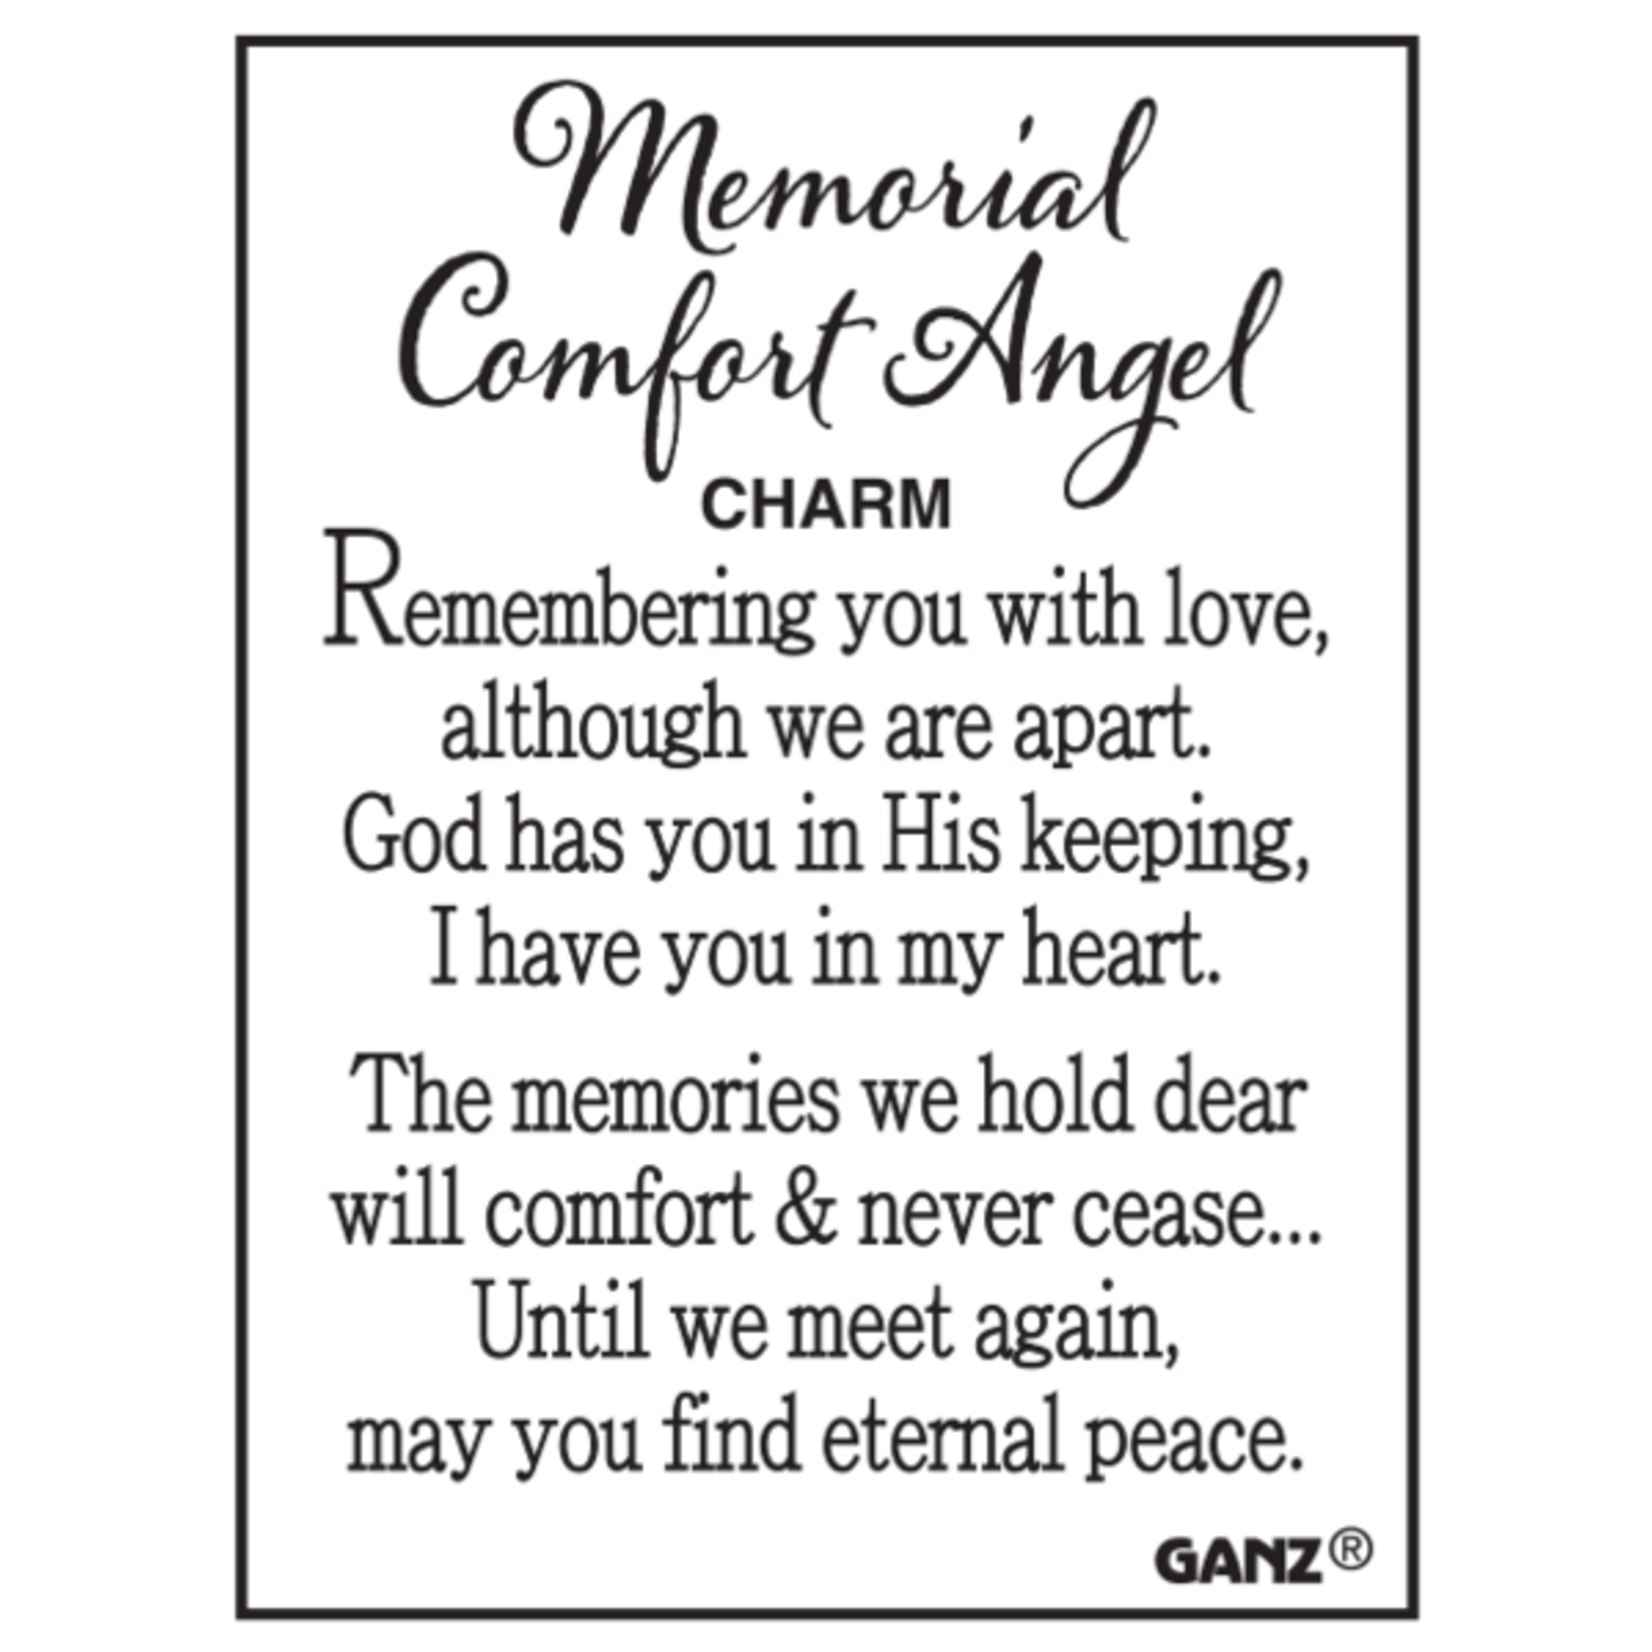 Ganz Memorial Comfort Angel Charm